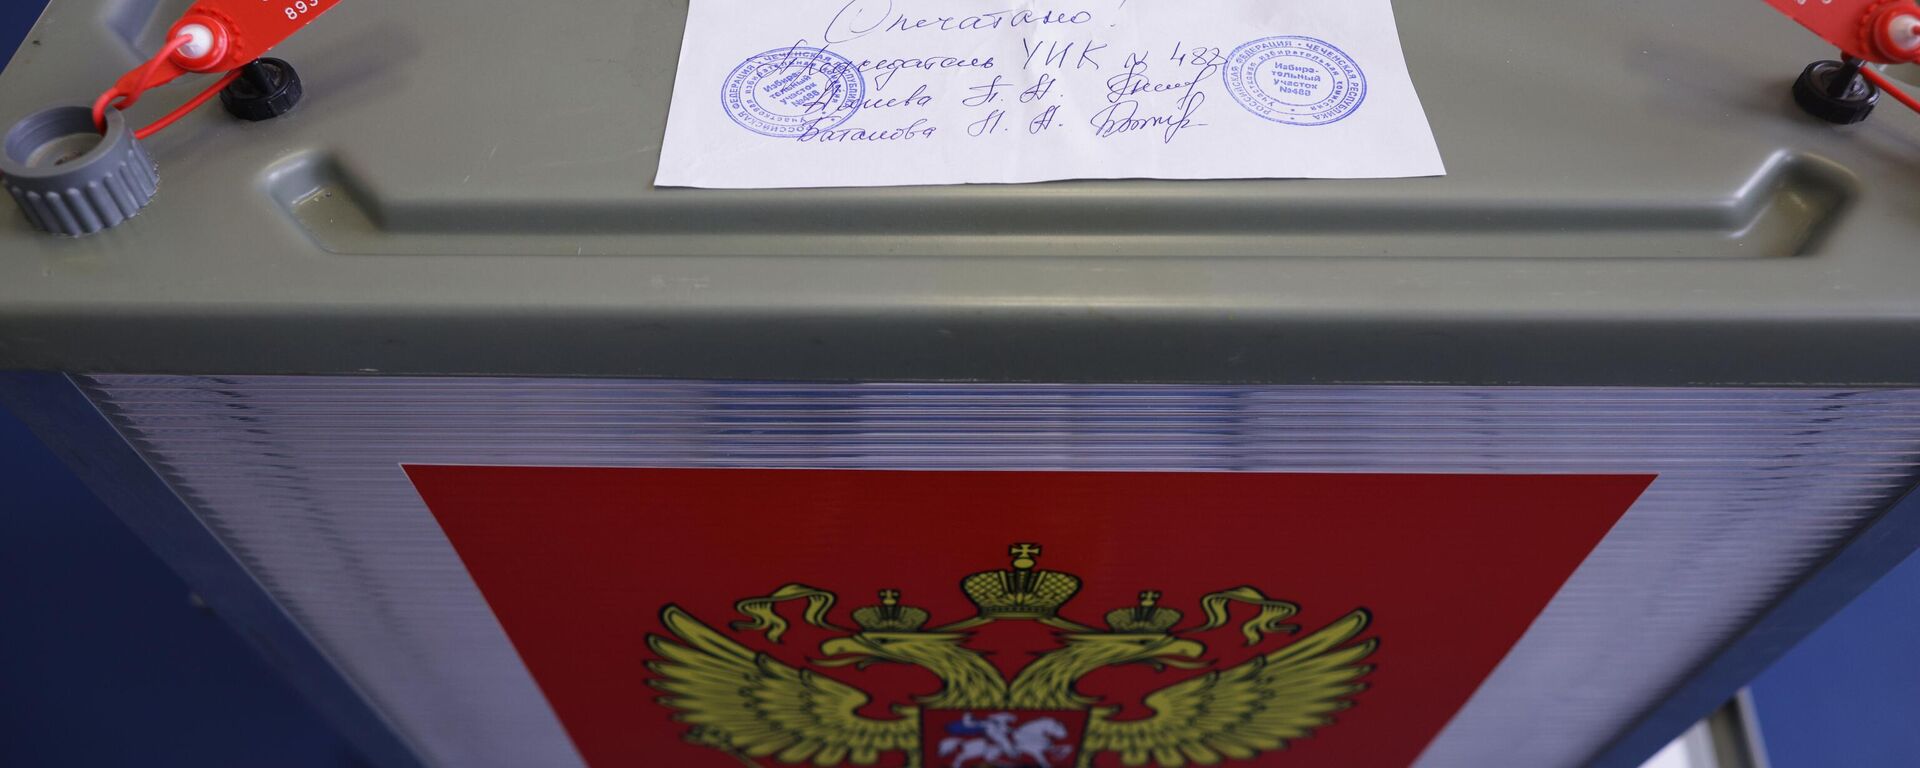 Избирательная урна на избирательном участке на выборах в России - Sputnik Латвия, 1920, 26.09.2021